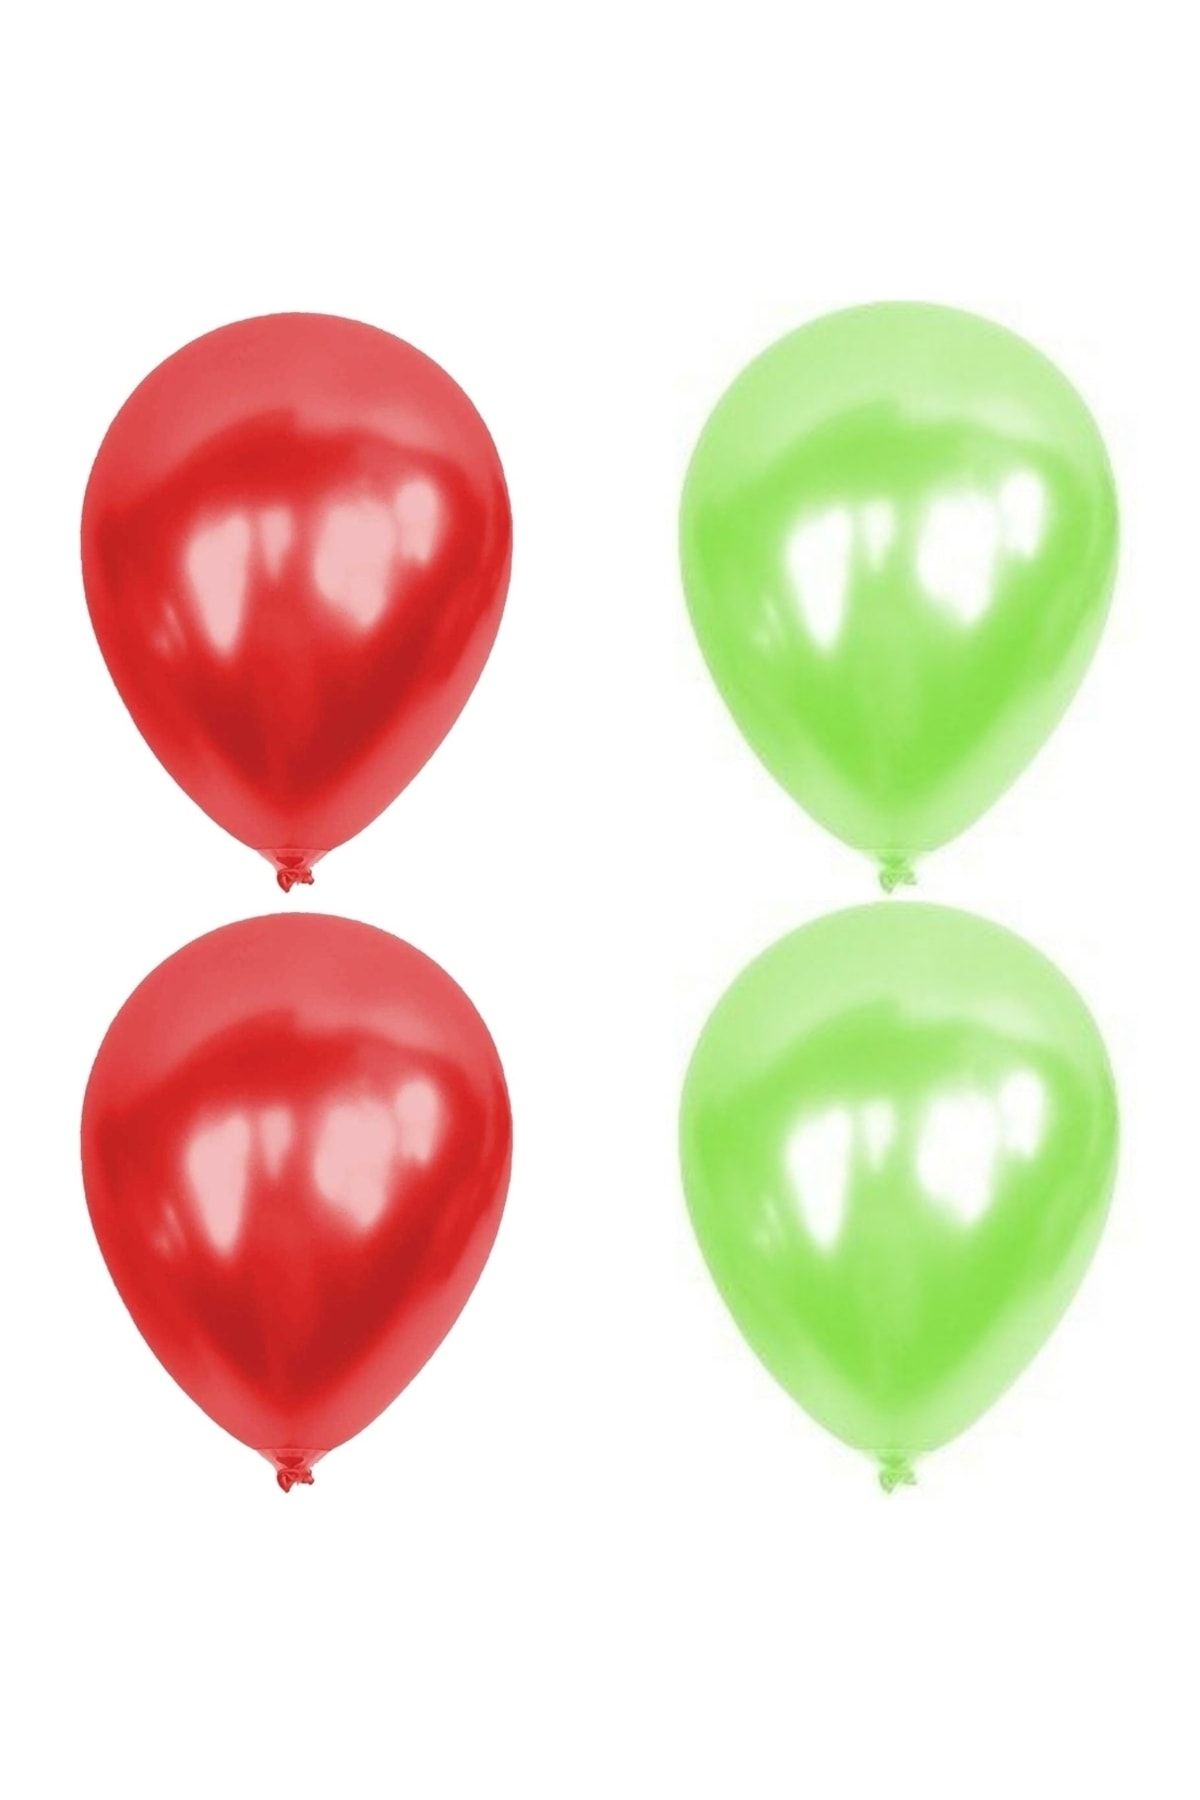 HKNYS 5 Adet Açık Yeşil Kırmızı Metalik Balon Helyum Gazı Uyumludur.-açılış Balonları